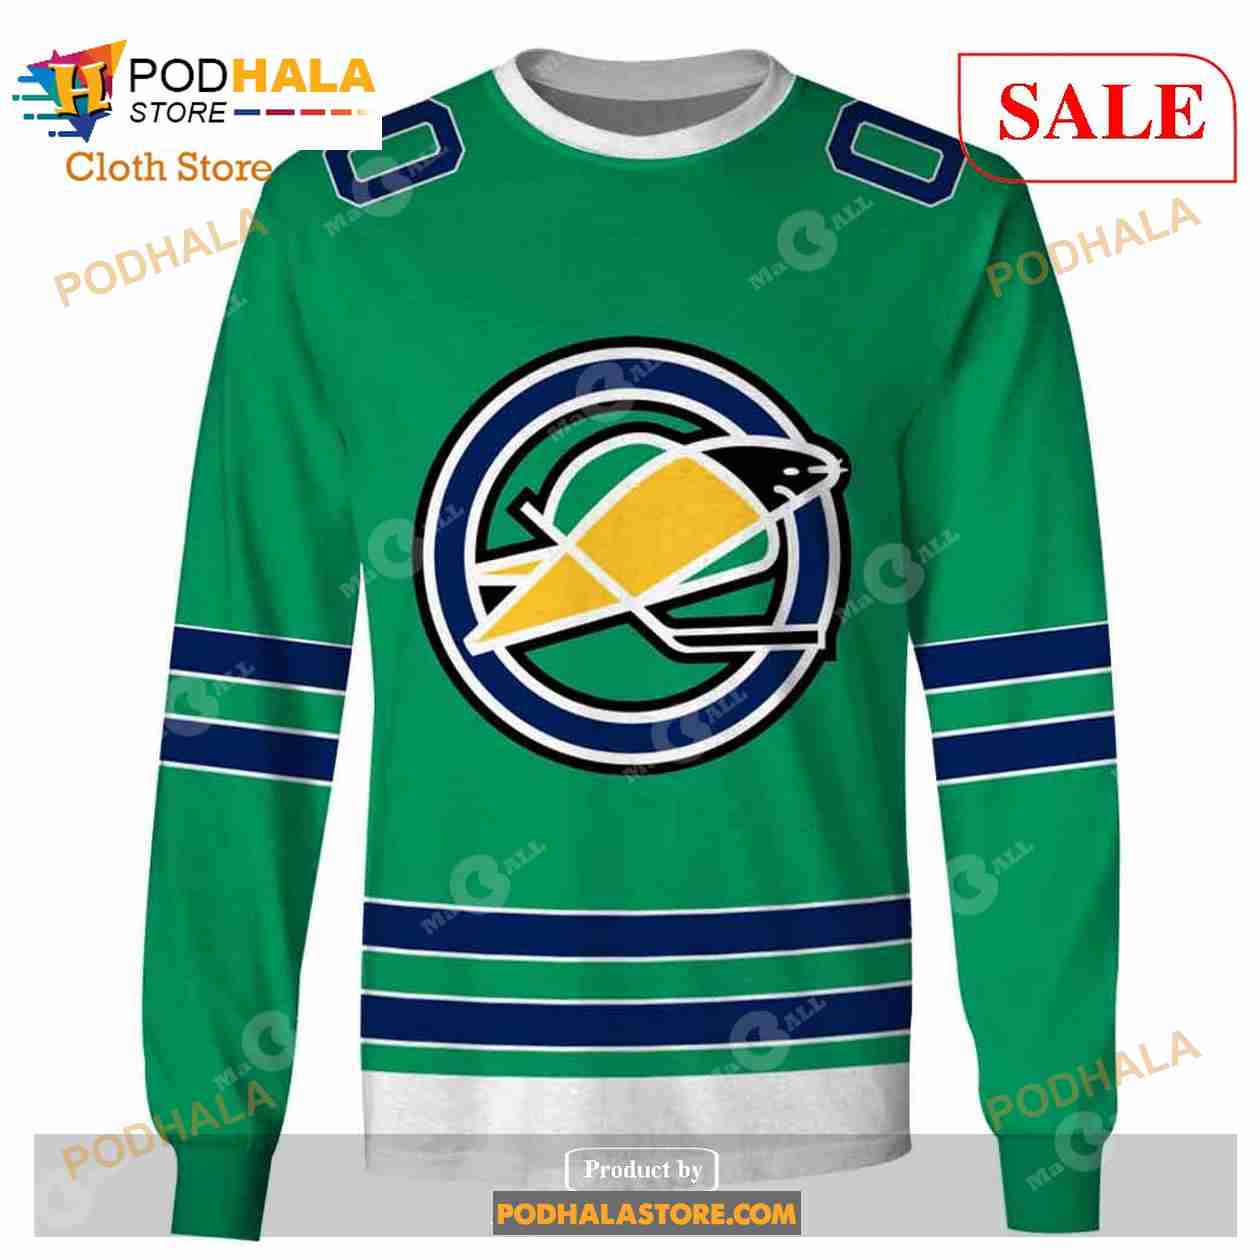 California Golden Seals NHL Fan Jerseys for sale